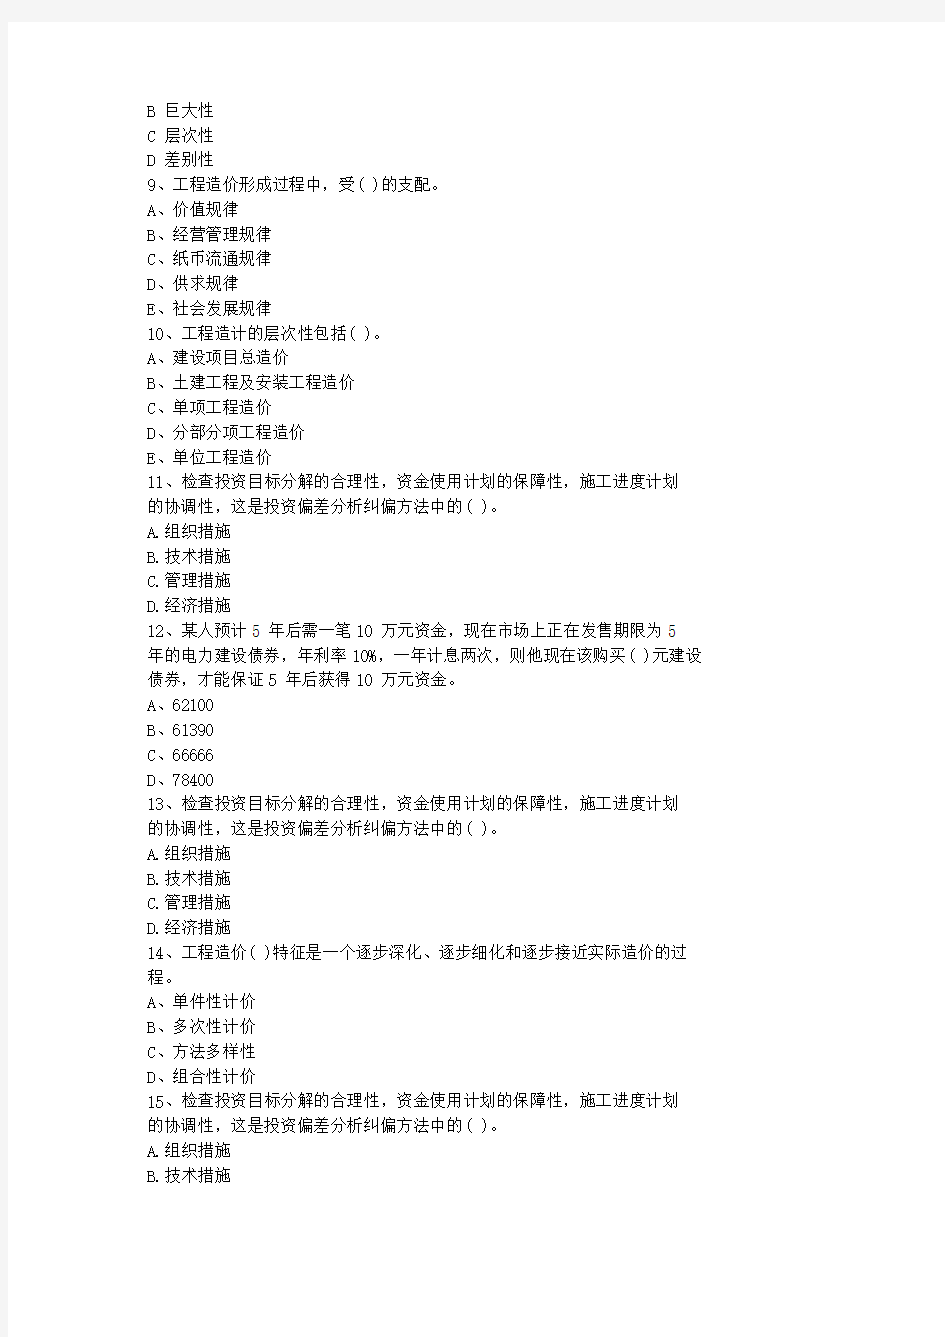 2013江苏省造价员考试试题(基础部分测试)最新考试试题库(完整版)